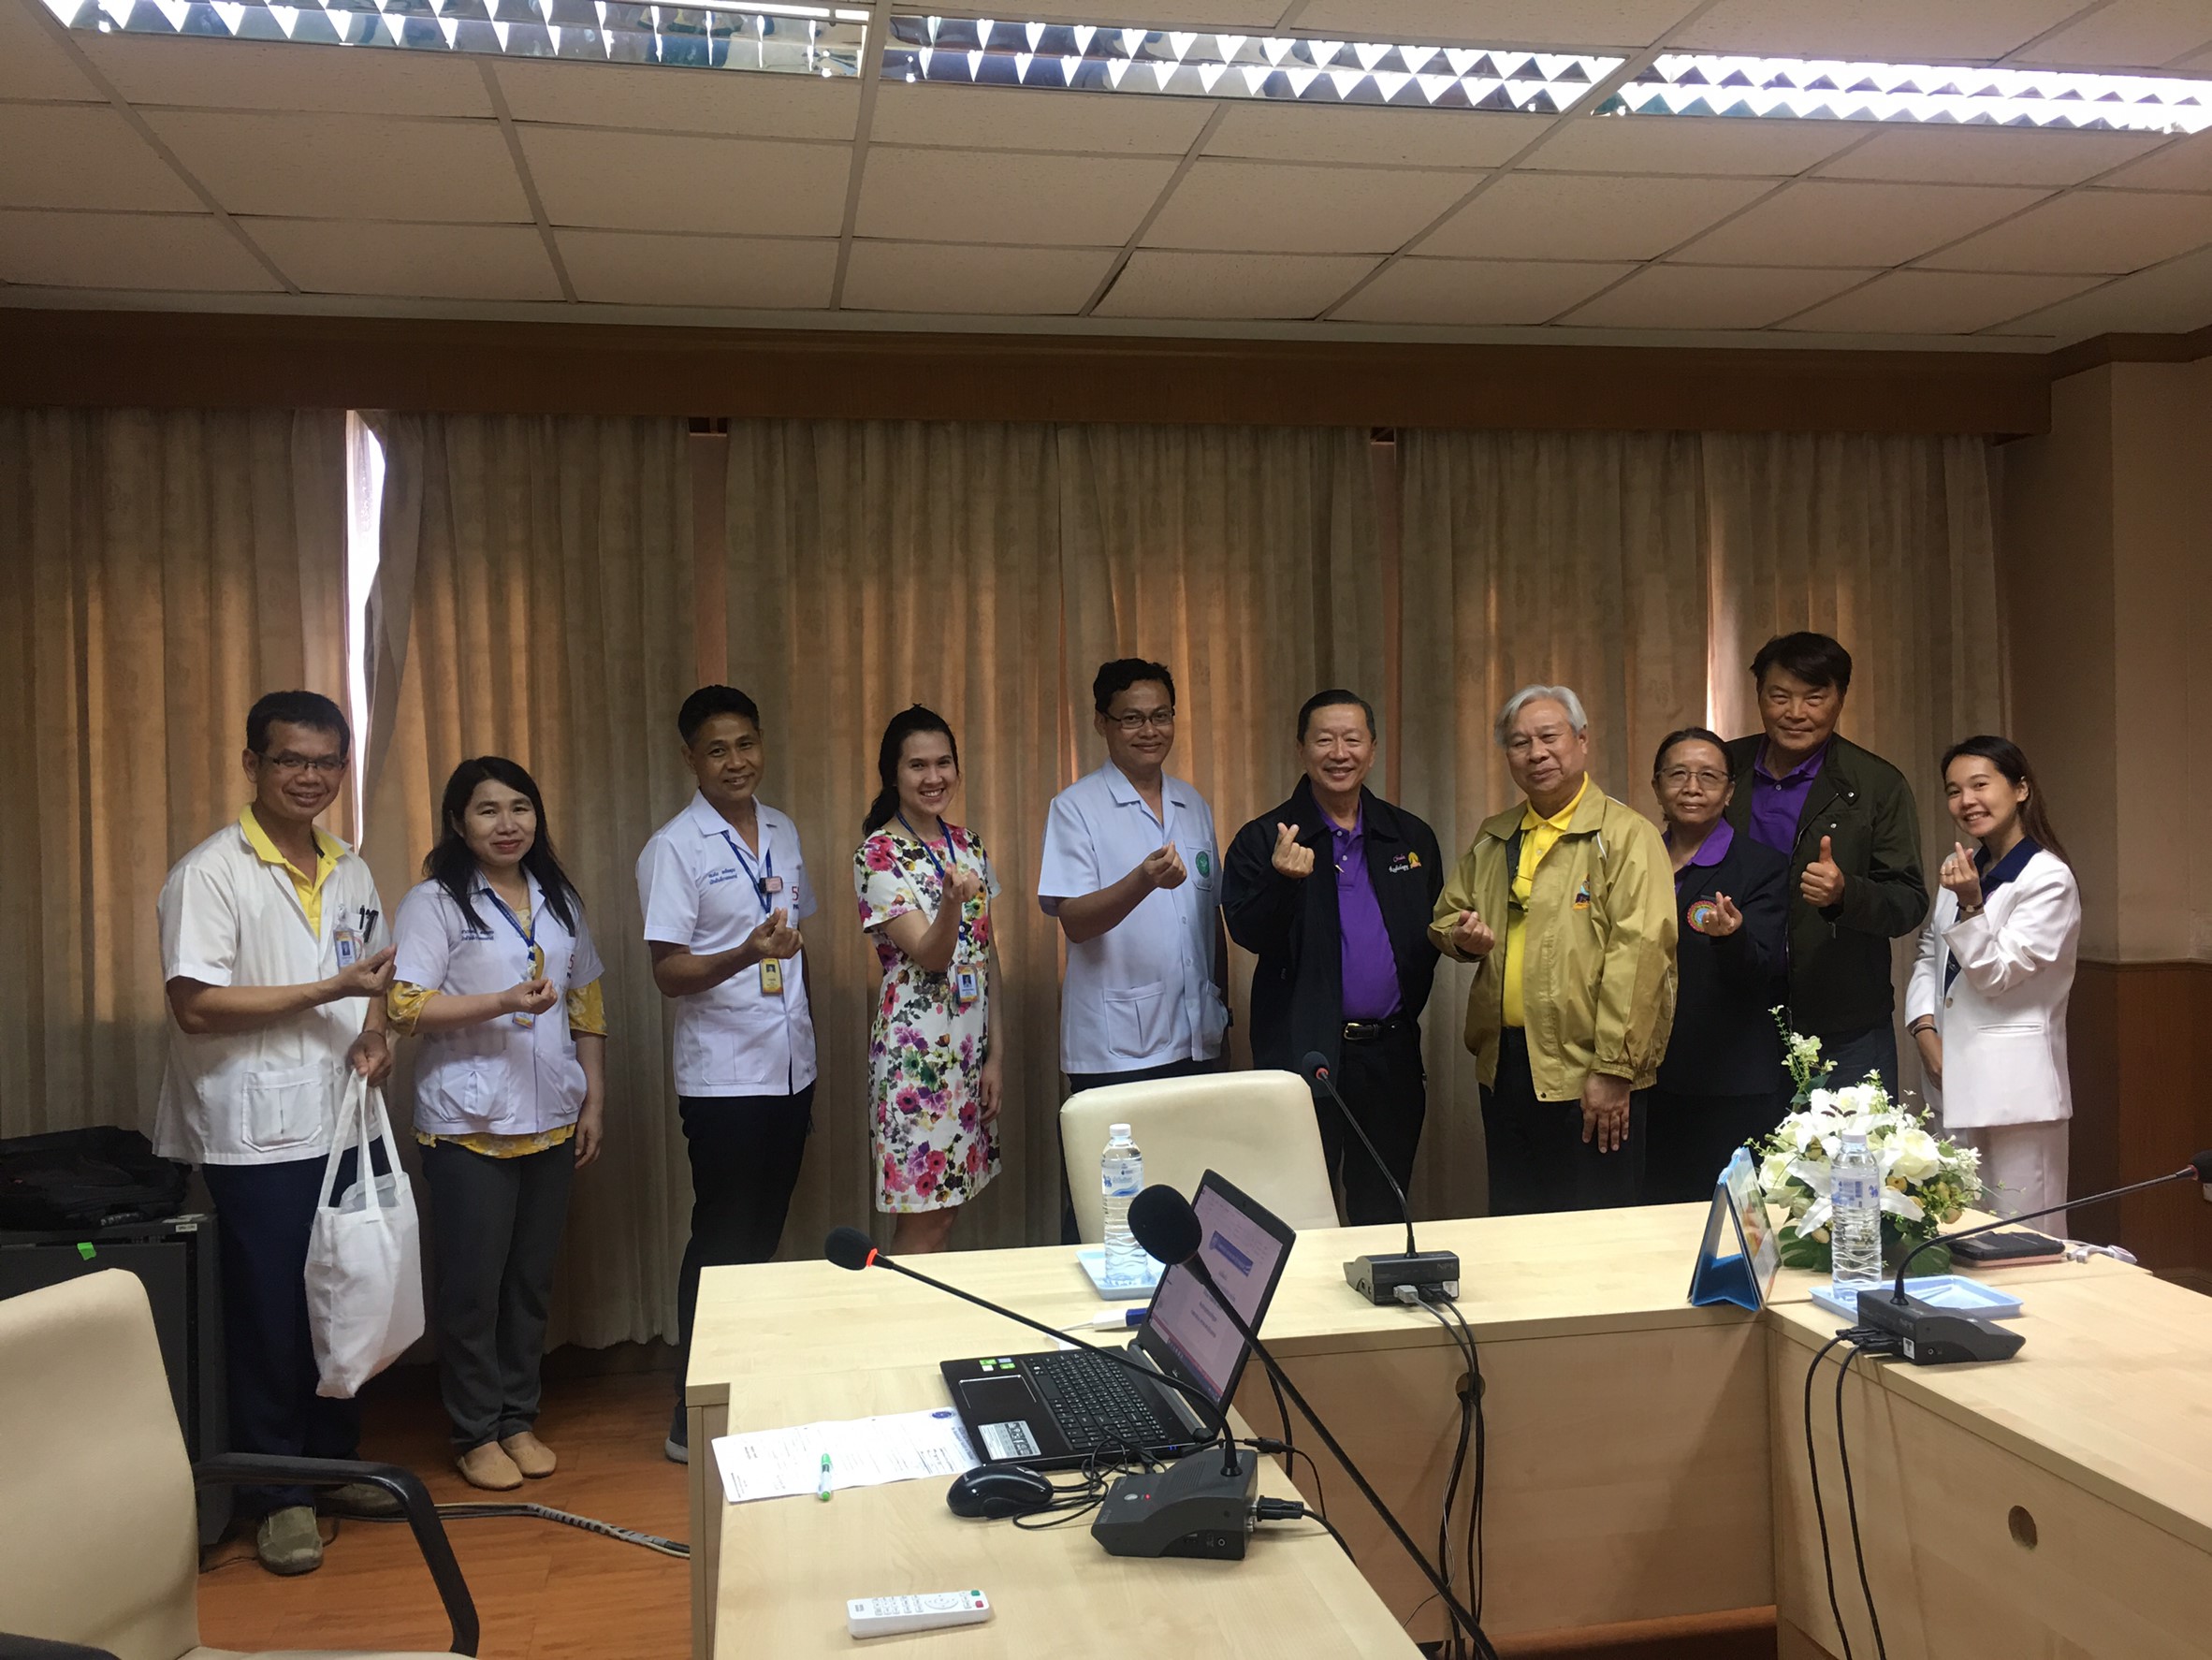 ประชุมวิชาการร่วมกับรังสีการแพทย์แห่งประเทศไทย ครั้งที่17 27-29 พ.ย. - พร้อมเข้าเยี่ยมและให้กำลังใจหน่วยงานรังสีวิทยาในพื้นที่จังหวัดอุบลราชธานีระหว่างวันที่ 25-26 พฤศจิกายน 2562 25